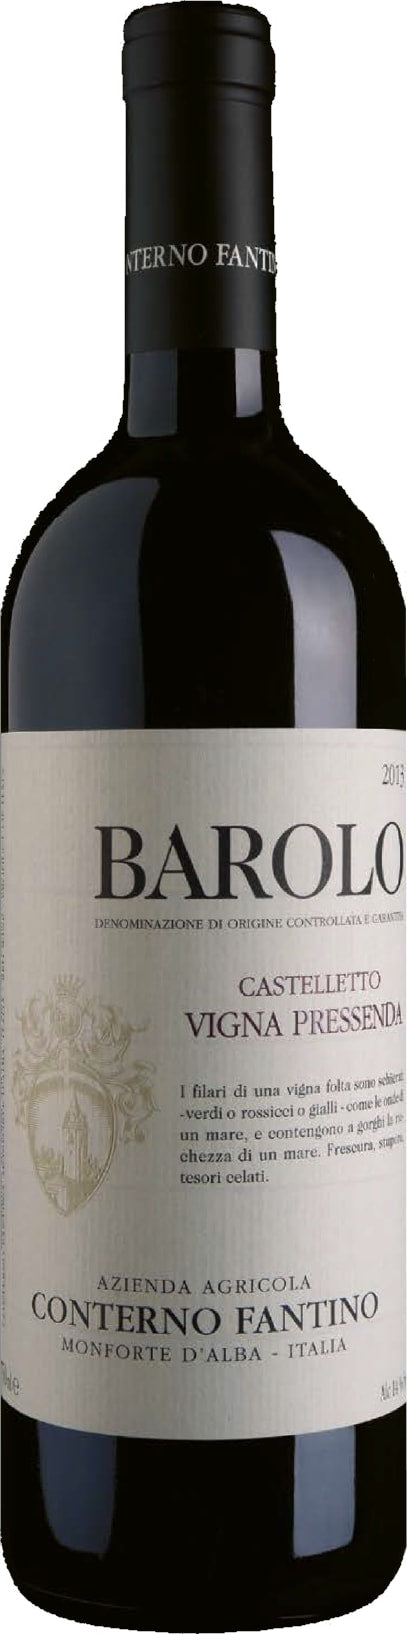 Conterno Fantino Barolo Castelletto Vigna Pressenda 2018 75cl - Buy Conterno Fantino Wines from GREAT WINES DIRECT wine shop